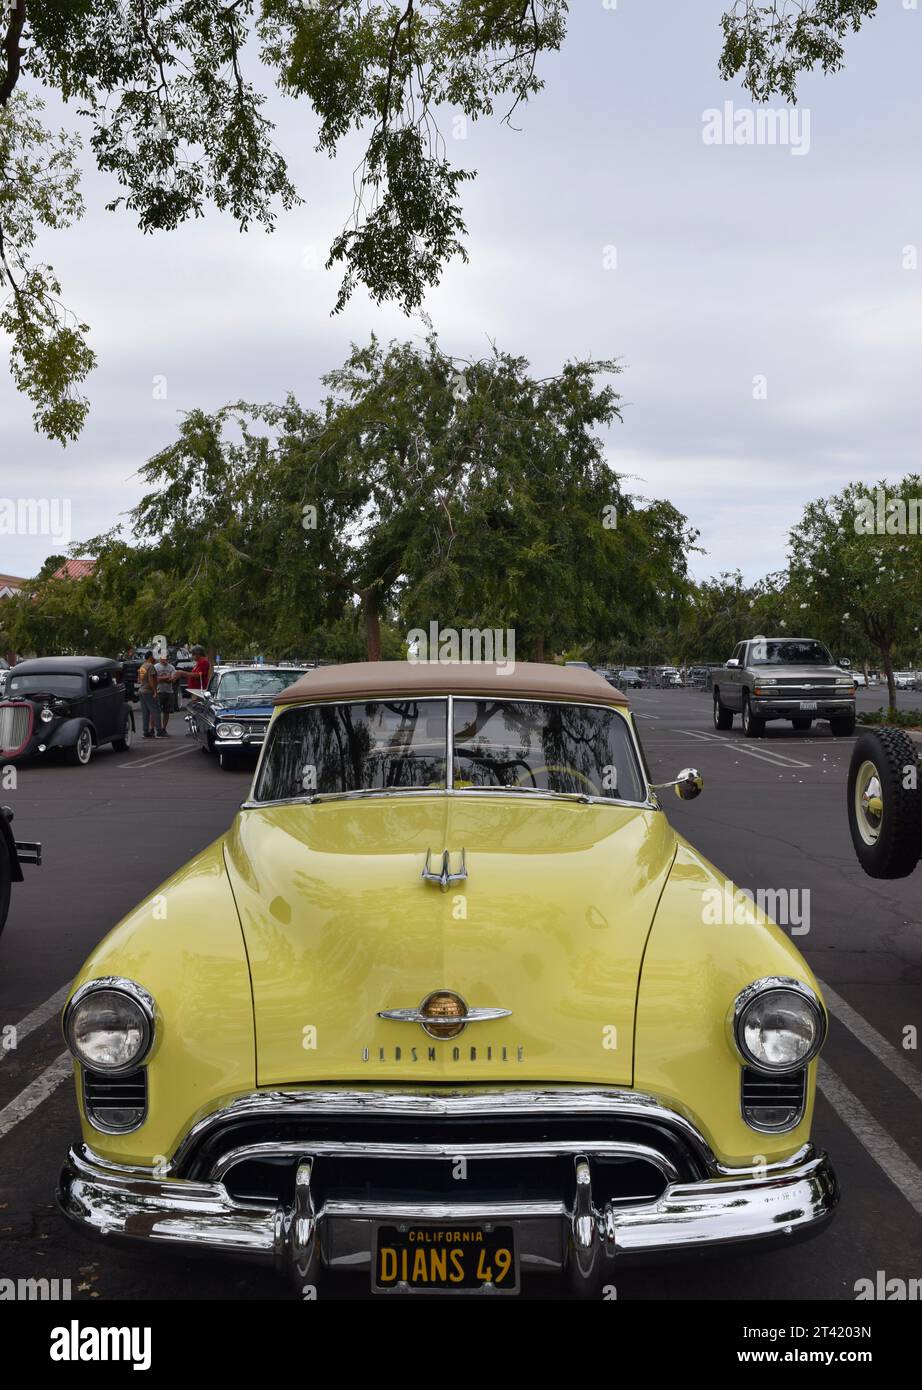 Voiture classique jaune vintage garée dans une rangée de voitures similaires dans un parking Banque D'Images